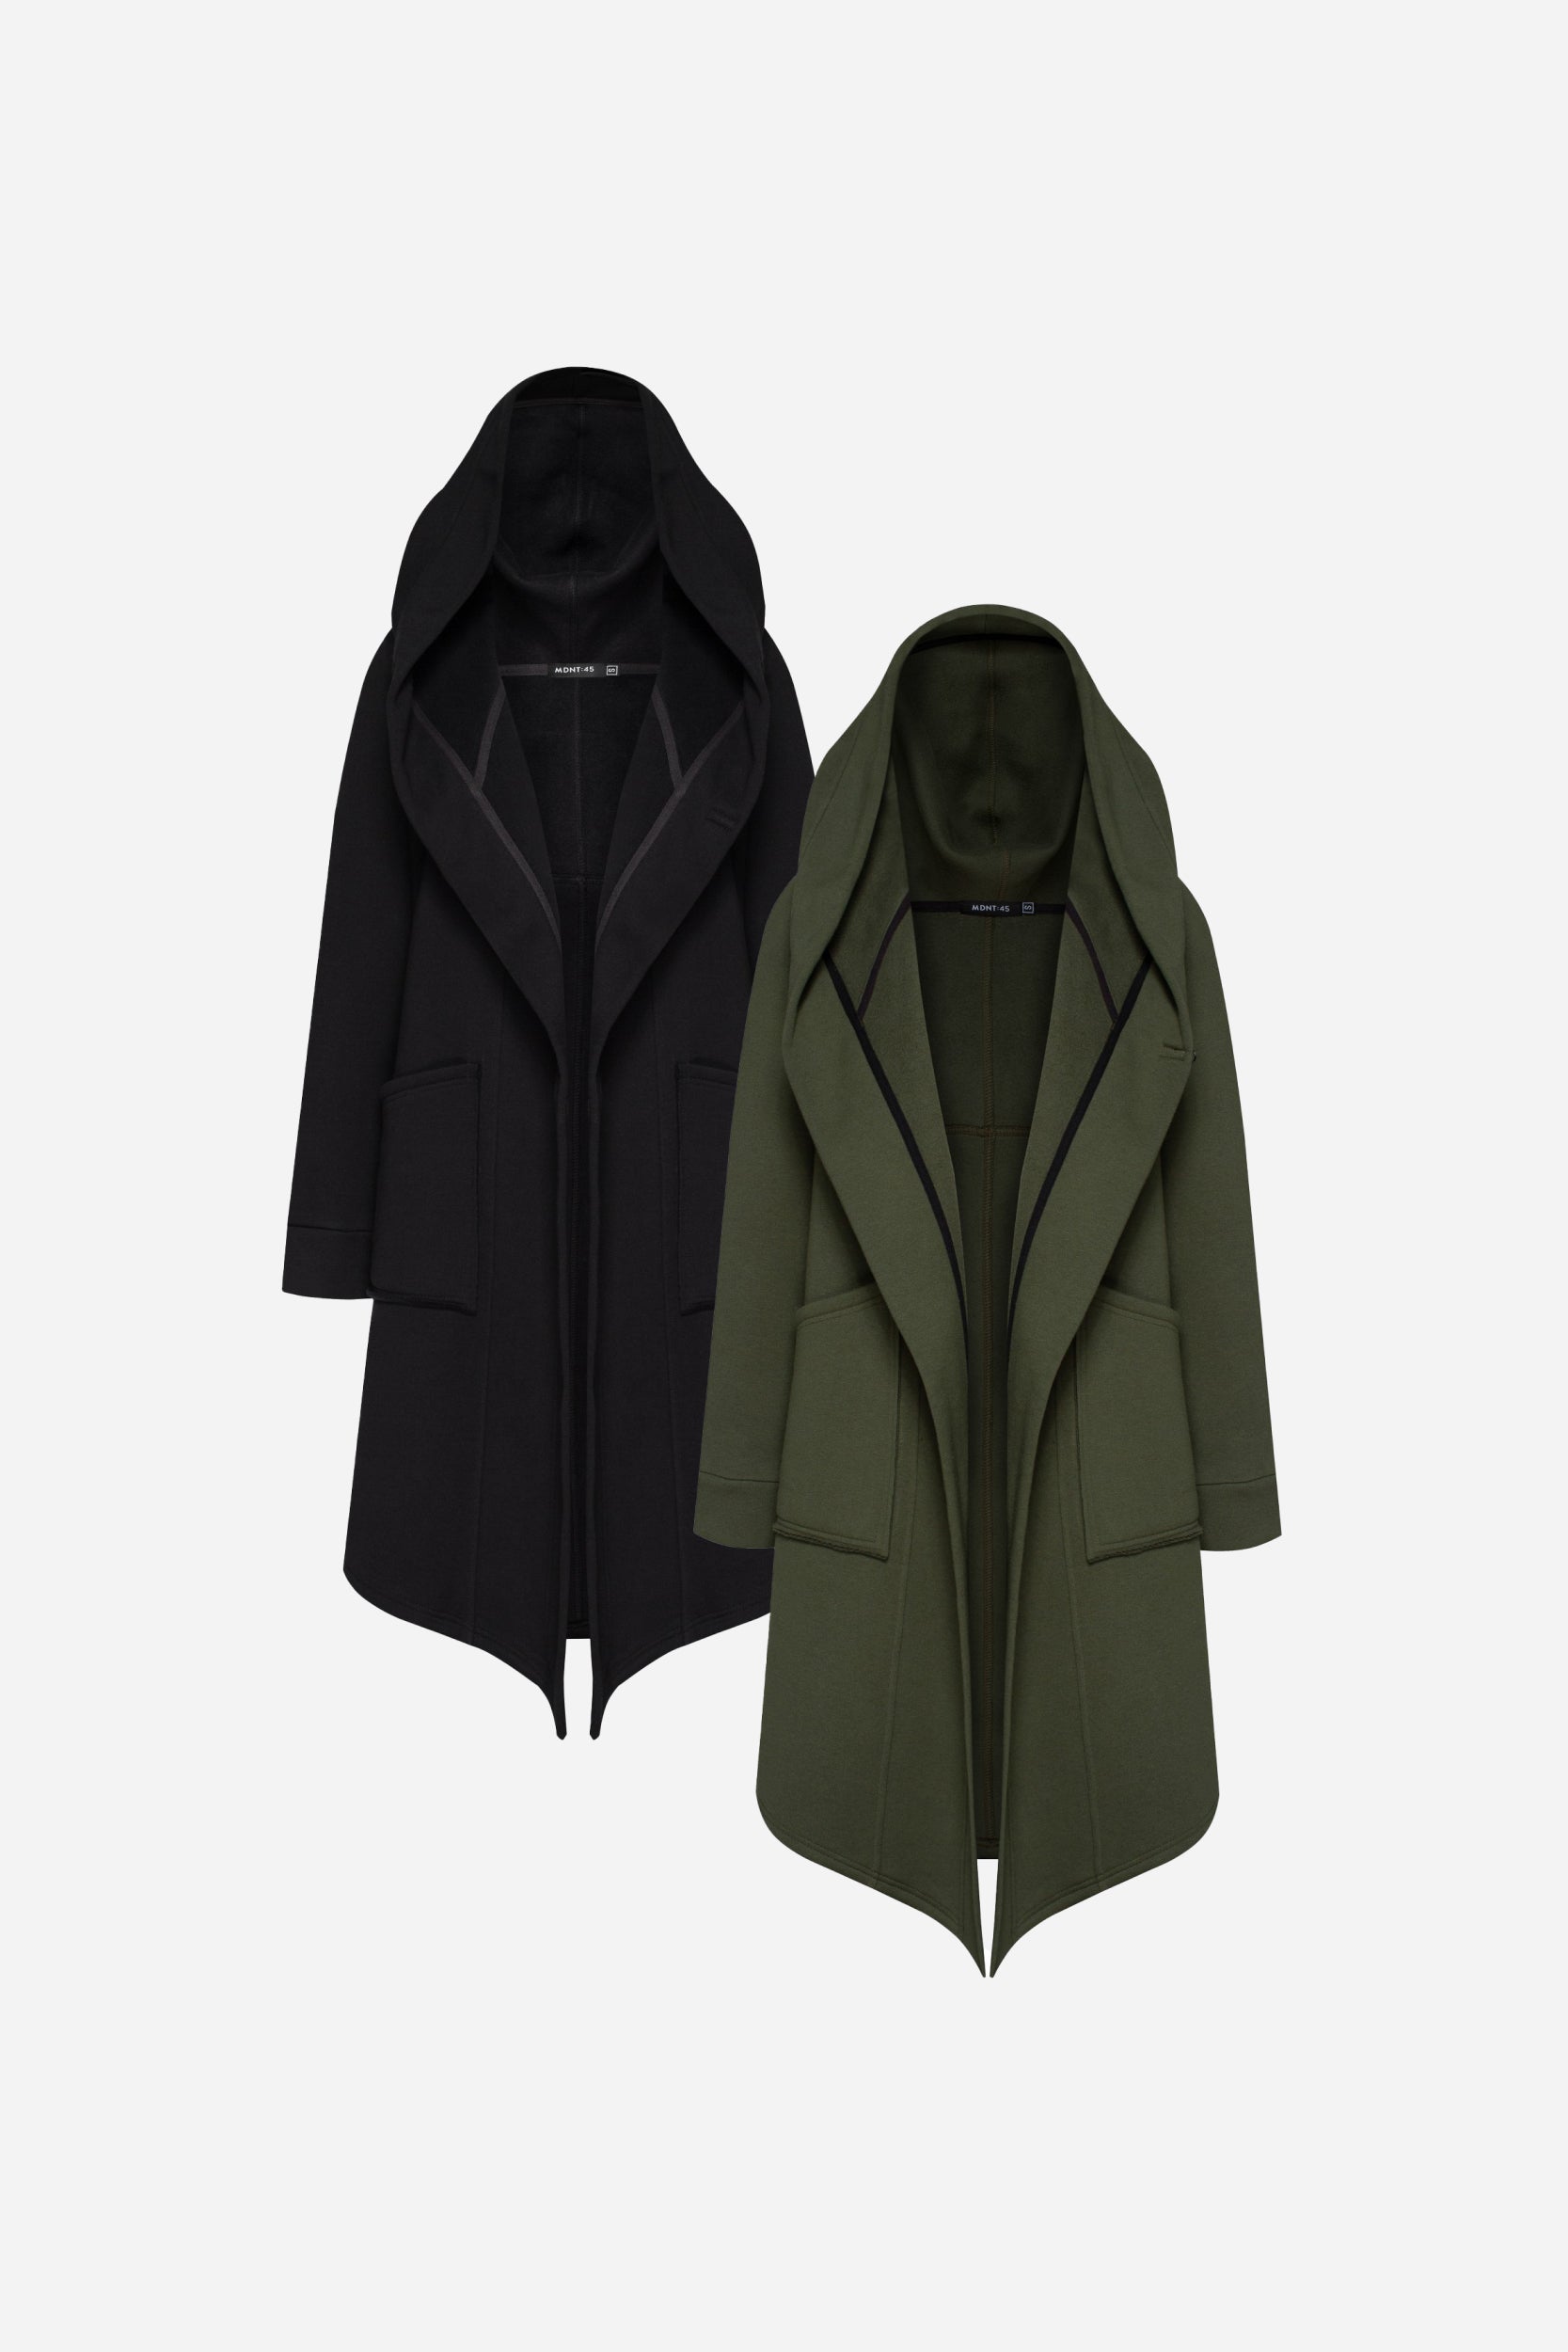 Bundle: Black & Khaki Hooded Fleece Jacket